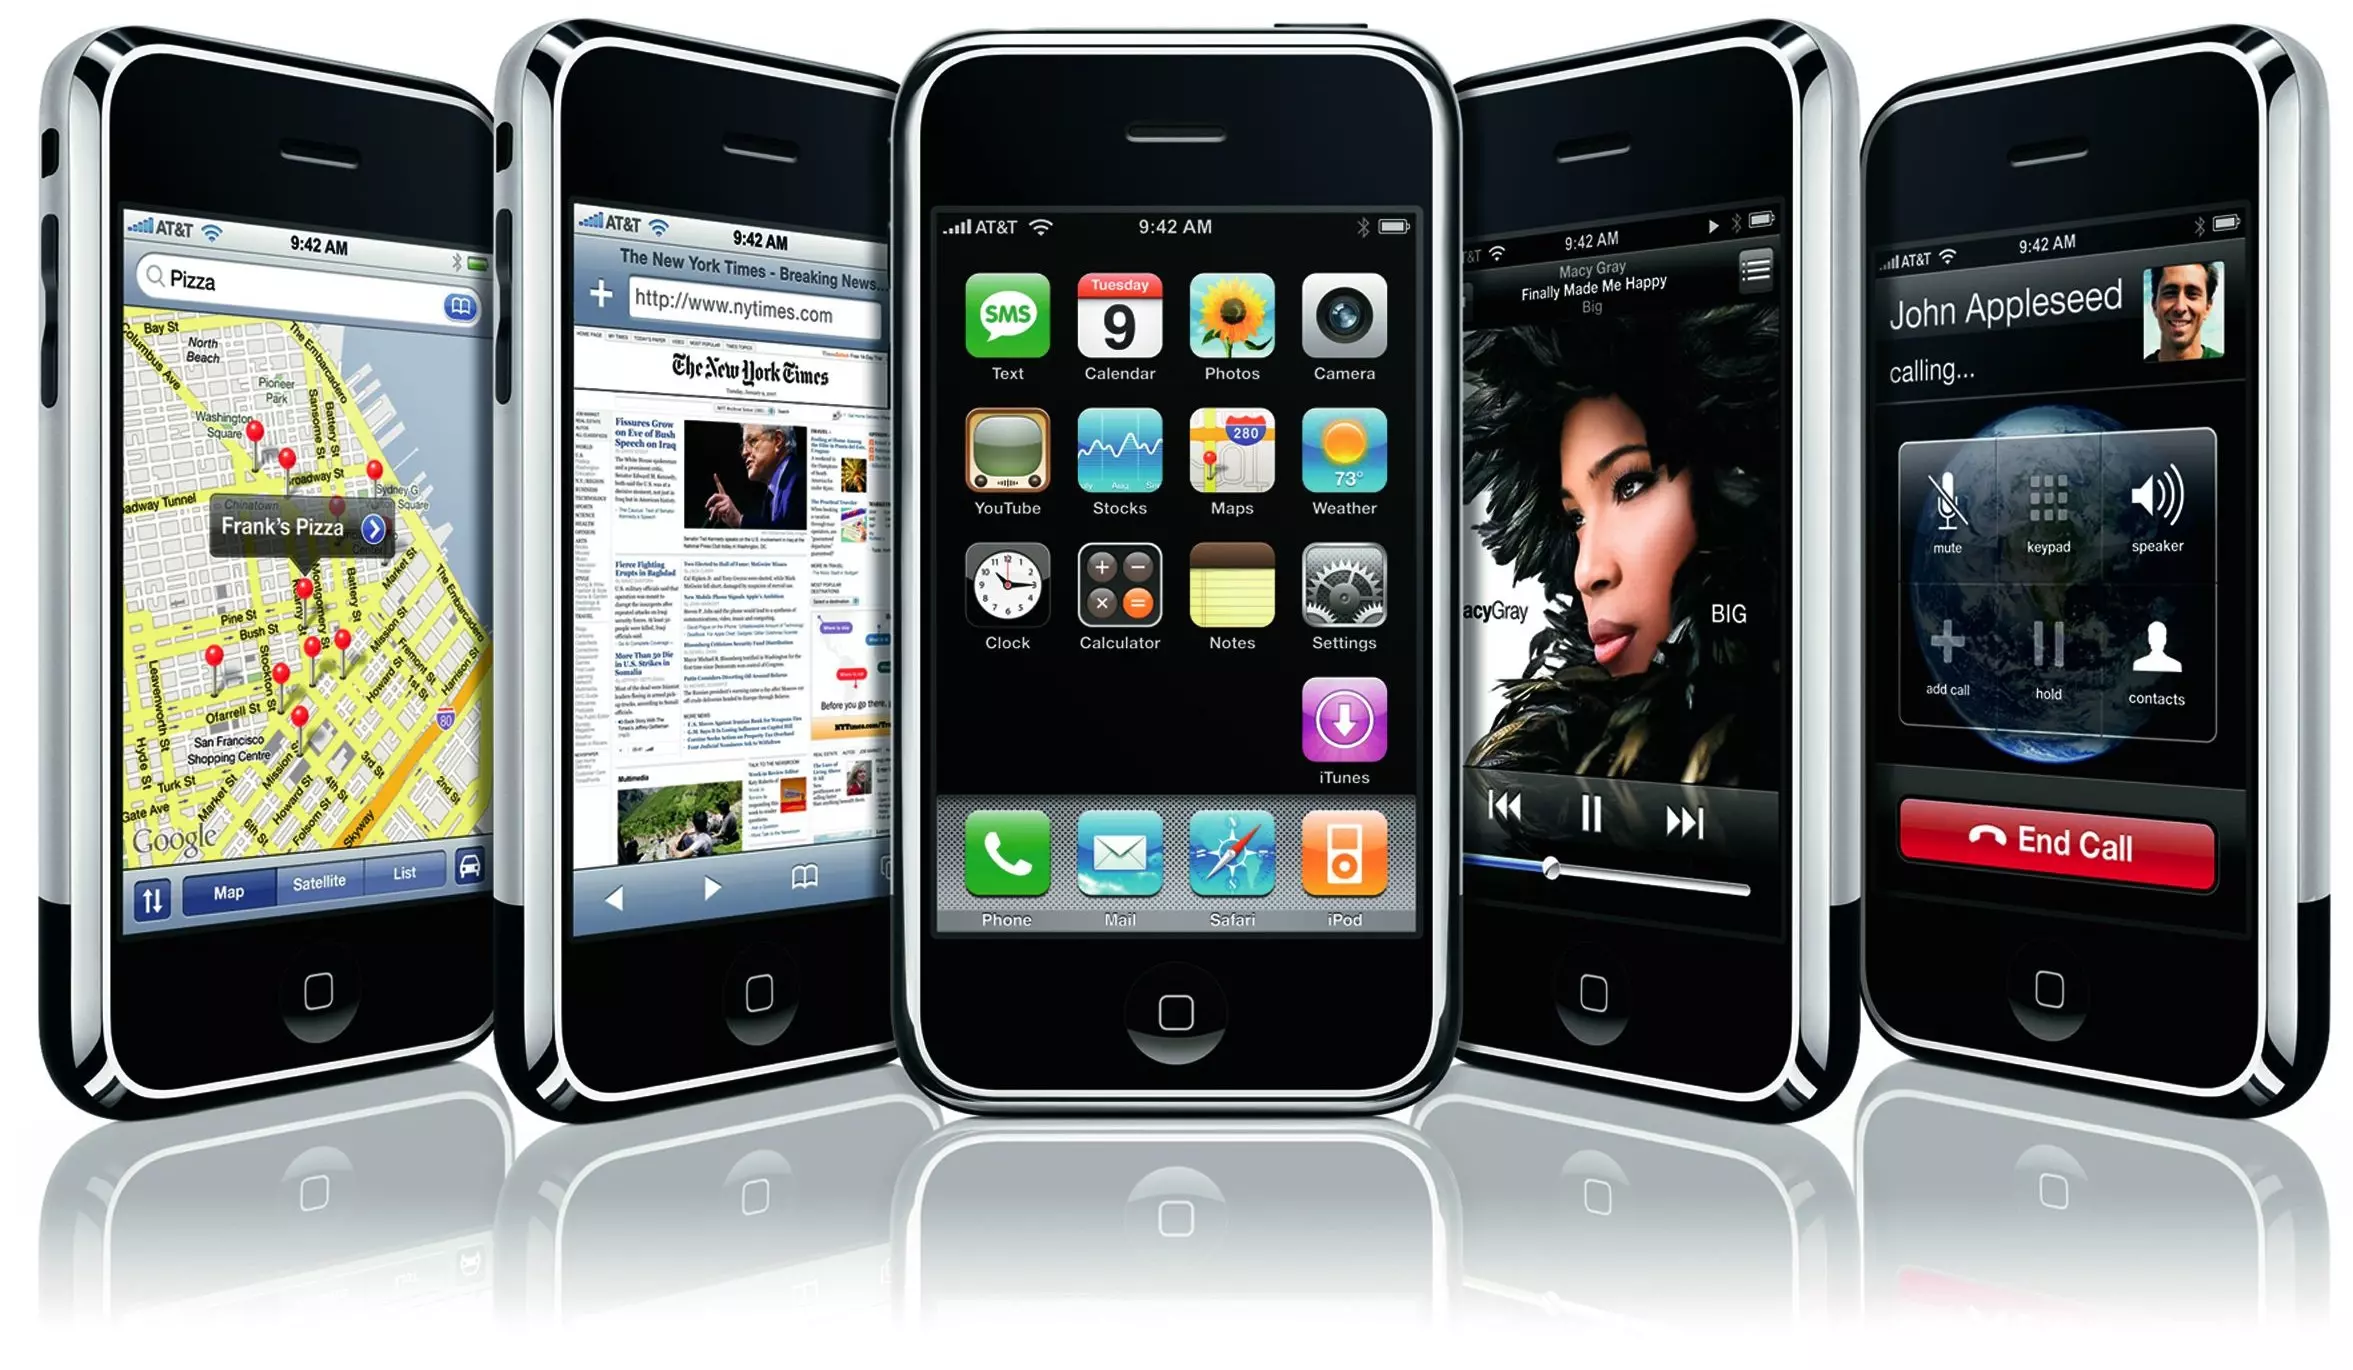 Por cuánto tiempo ofrece Apple soporte para iPhones antiguos?